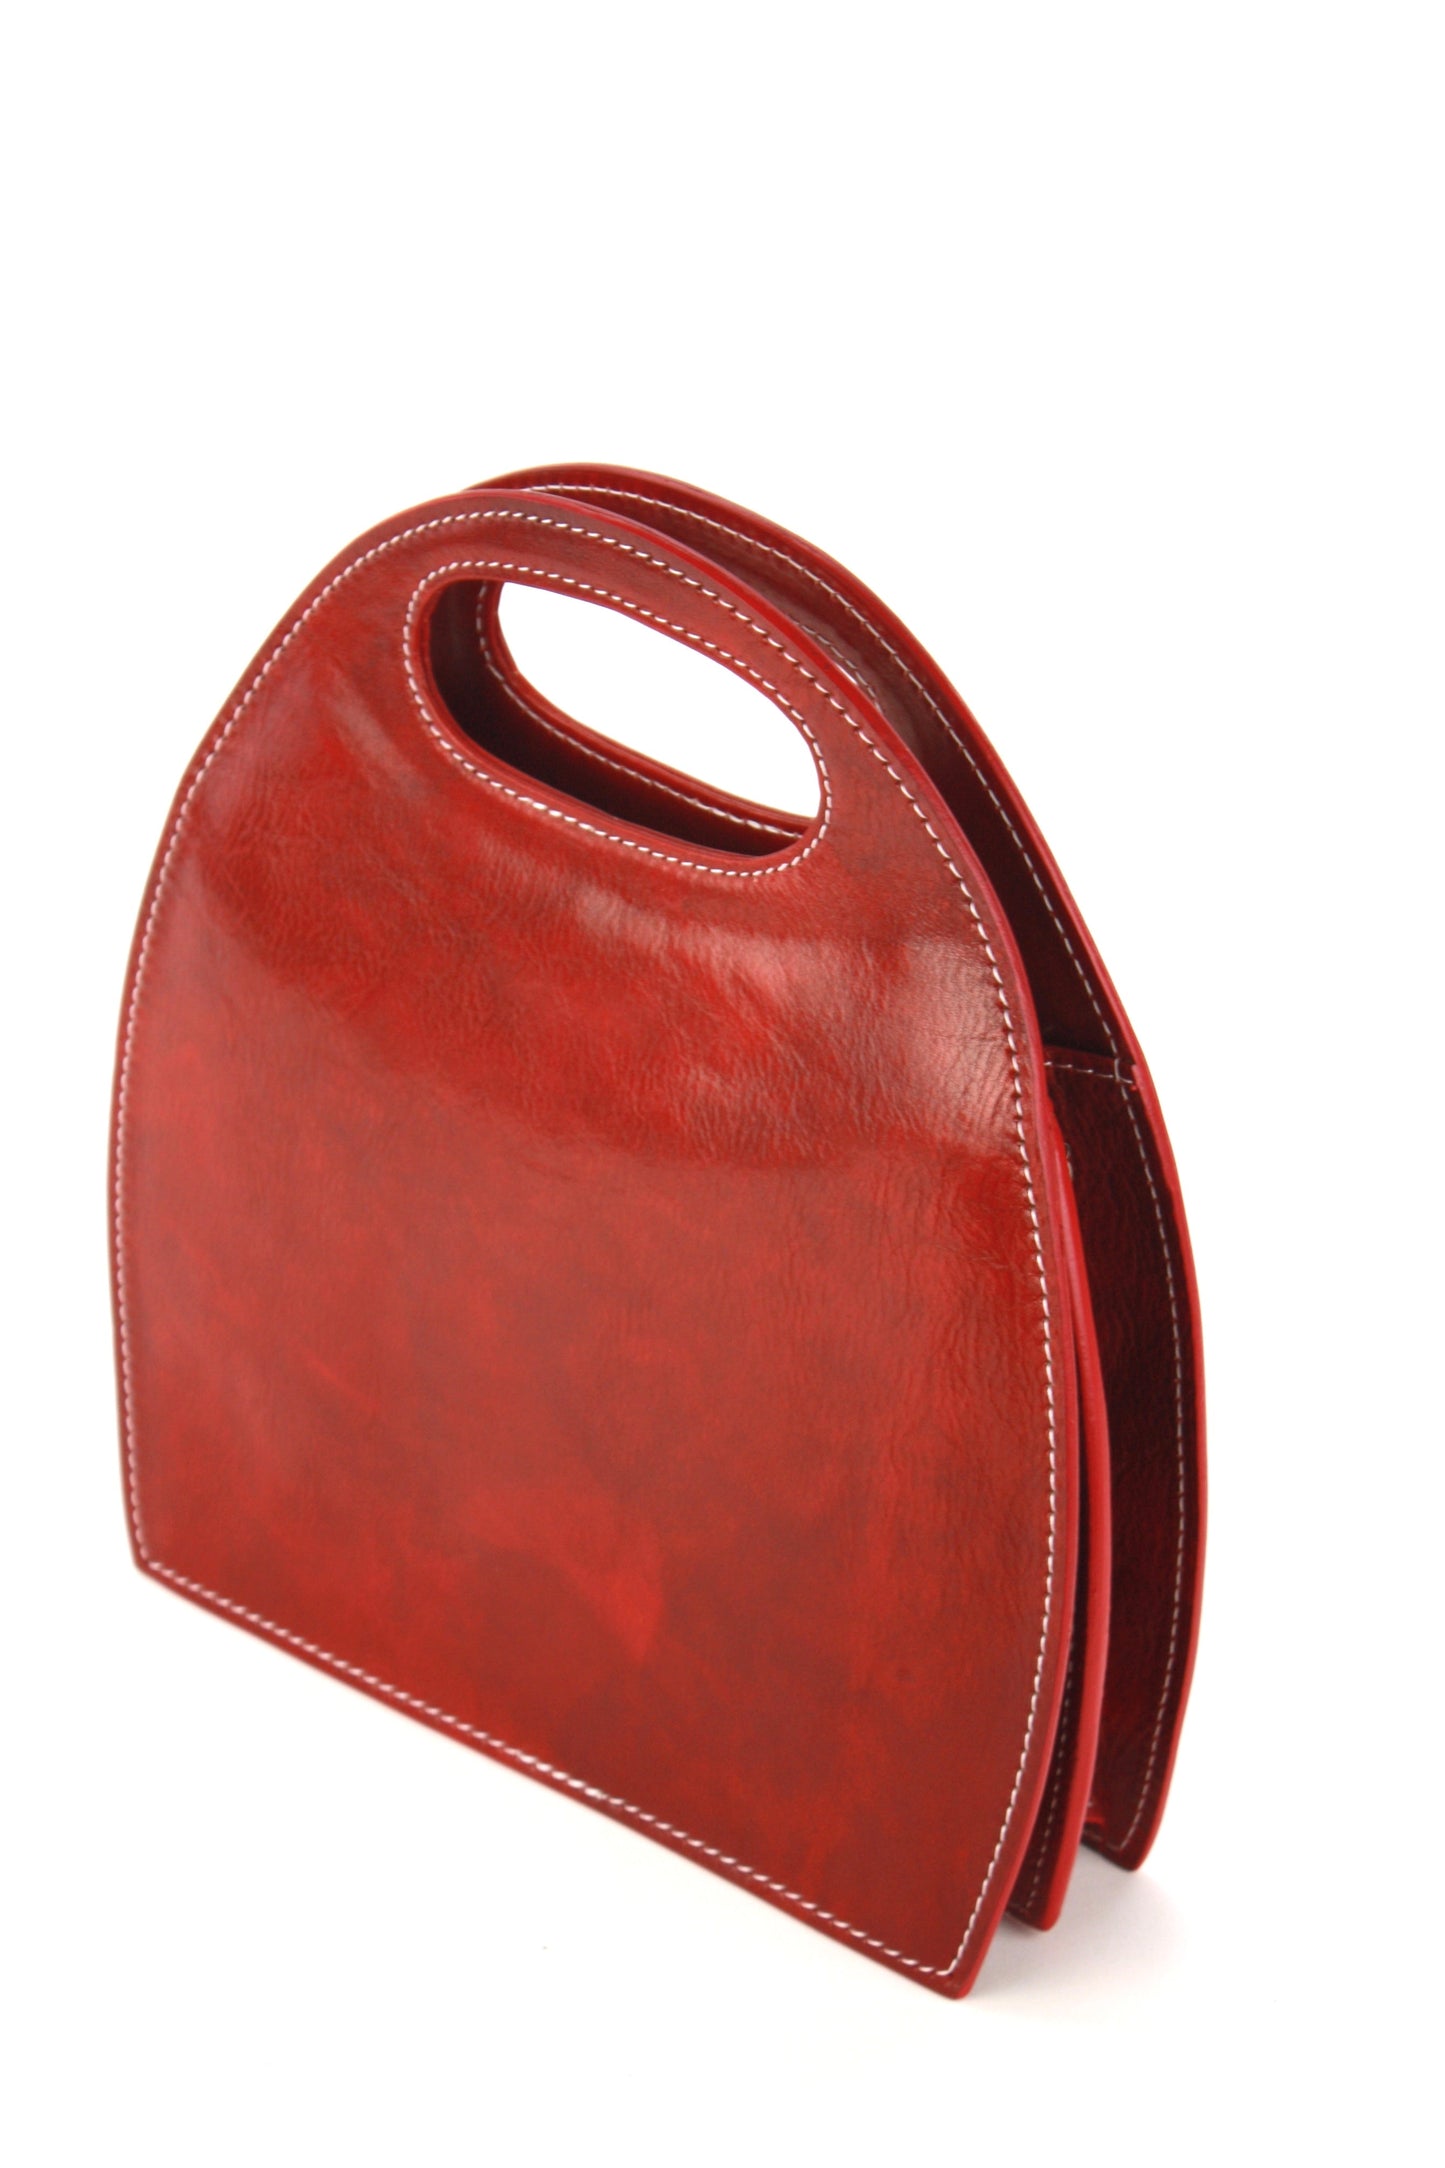 Semi Oval handbag in dark red